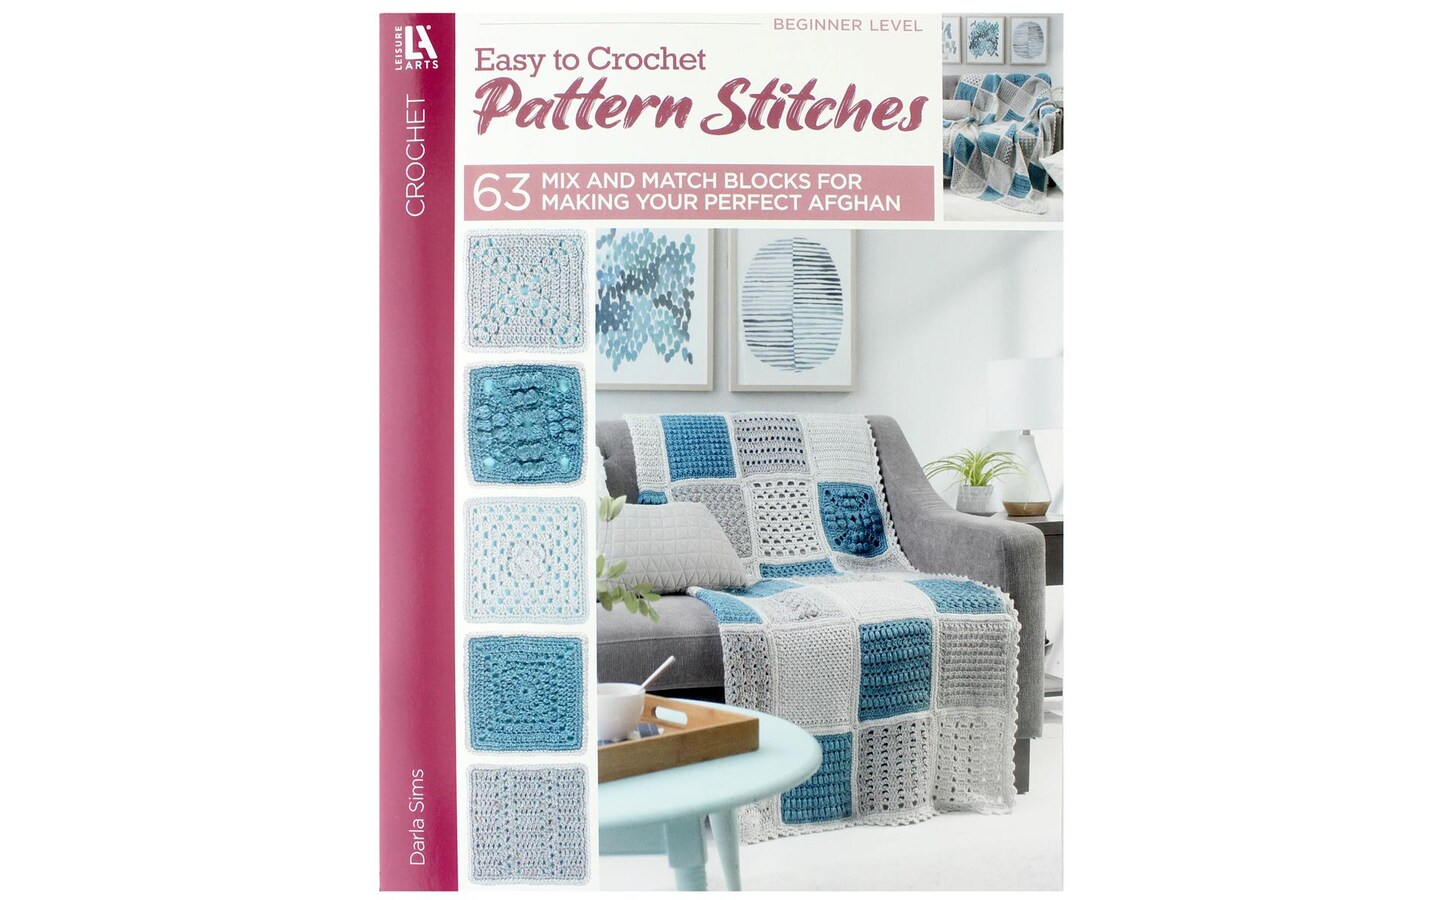 Annie's Patterns Book - Super Simple Crochet Stitch - Craft Warehouse